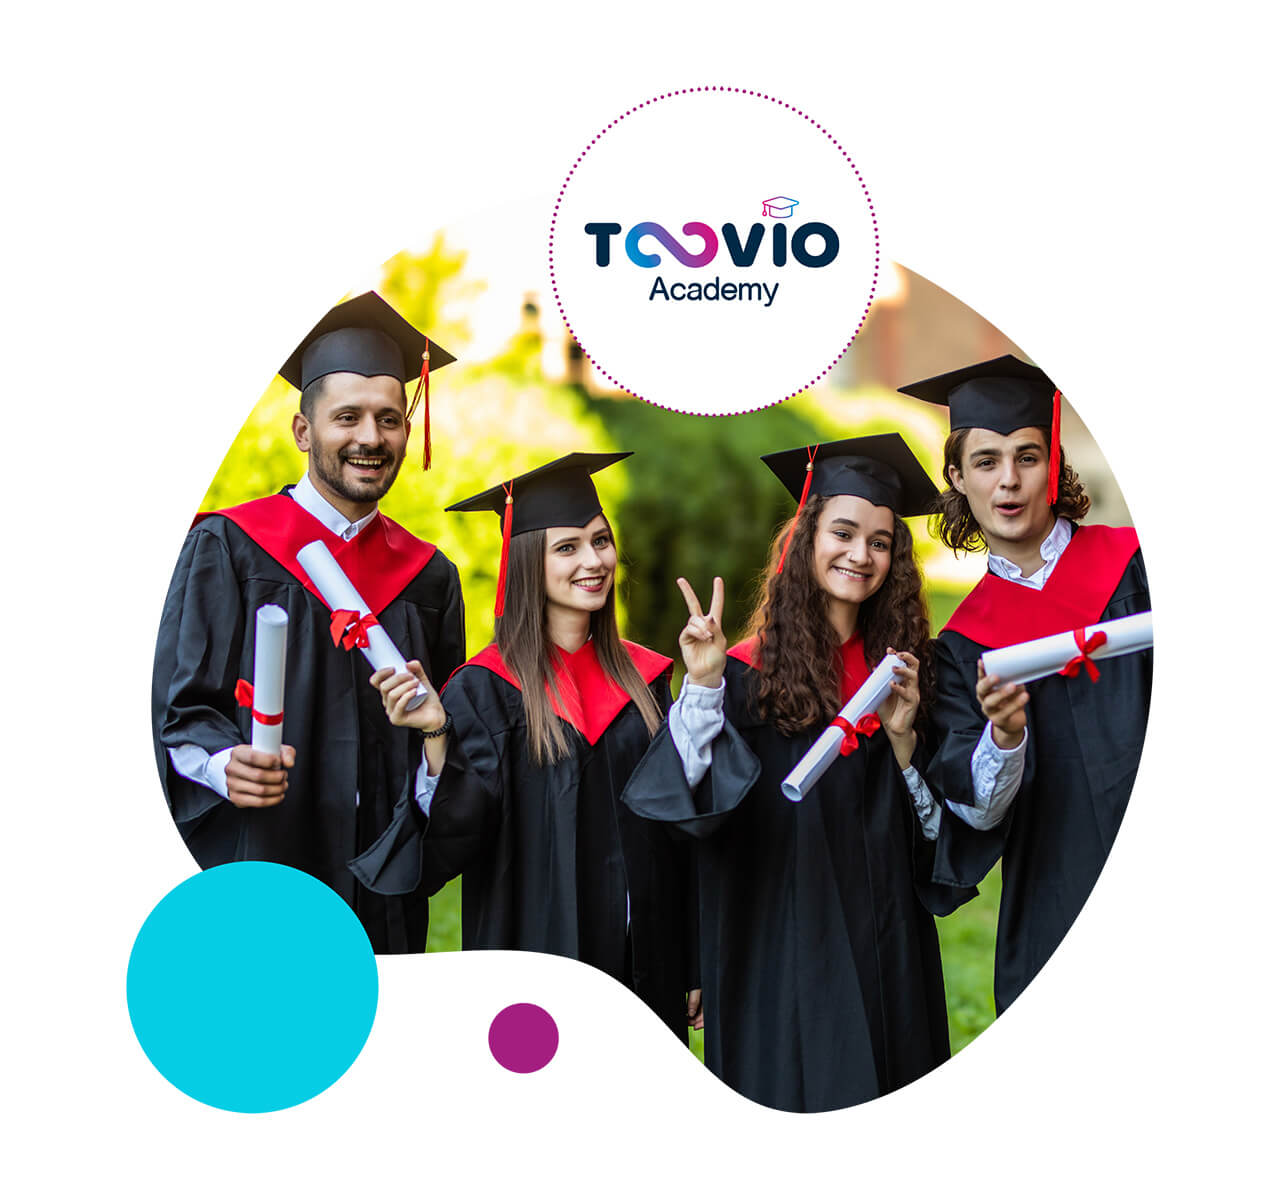 Toovio Academy